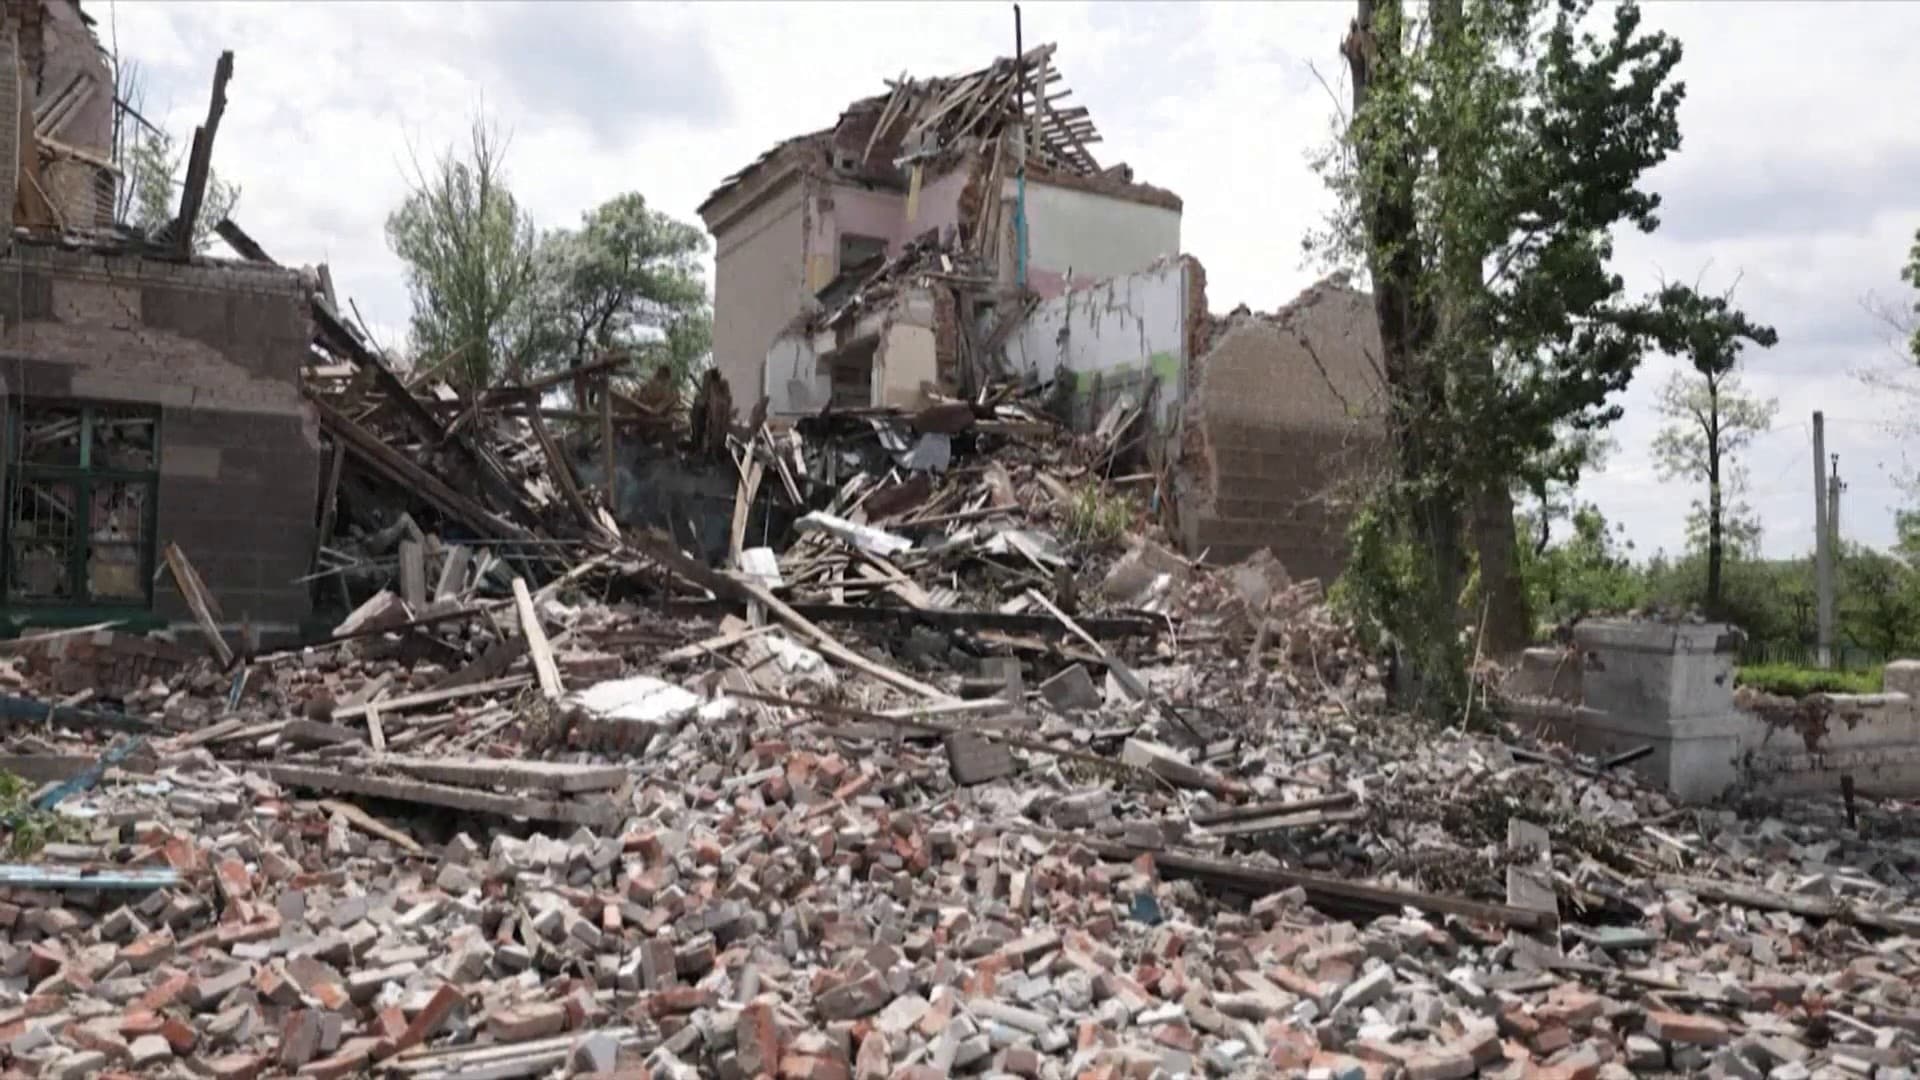 Live – Ukraine: Six killed in Russian bombing in Severodonetsk tonight